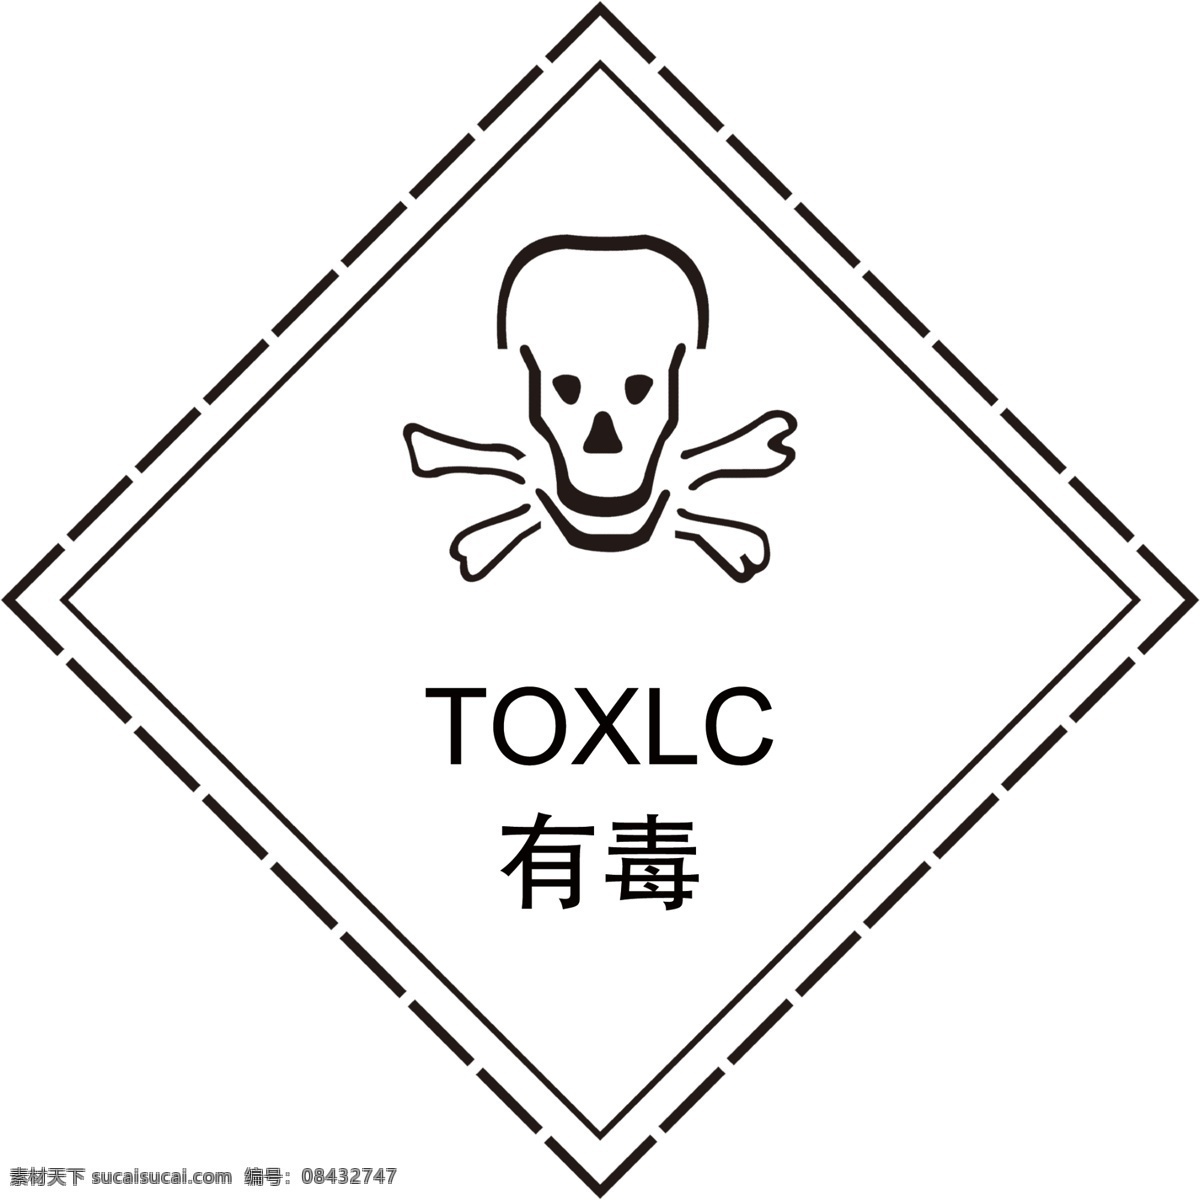 有毒 logo 方形logo 危险物